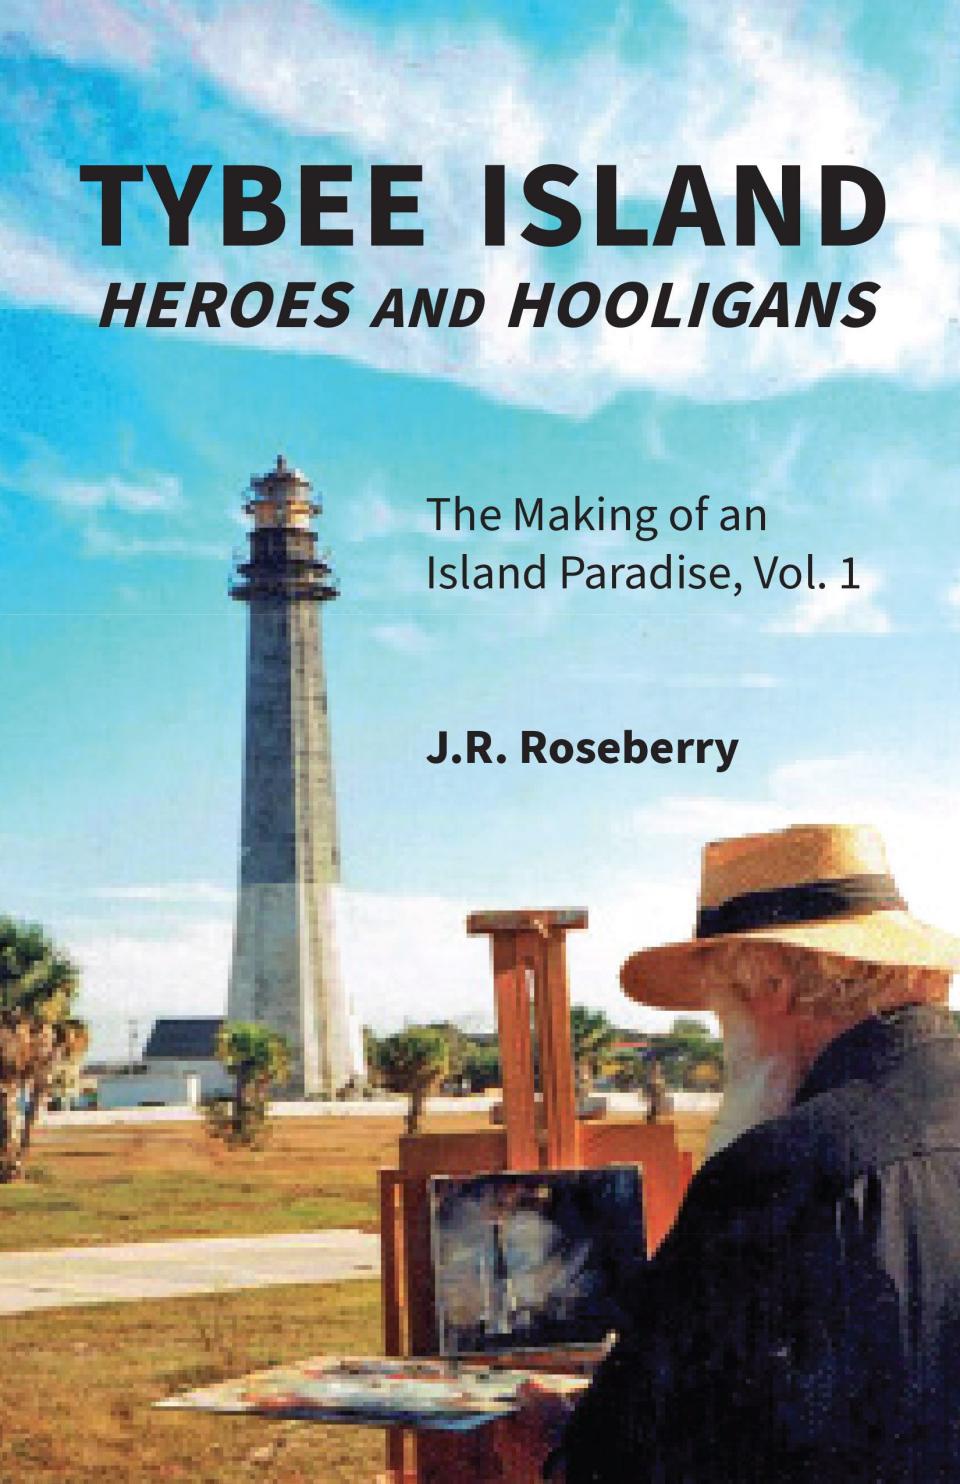 "Tybee Island Heroes and Hooligans" by J.R. Roseberry